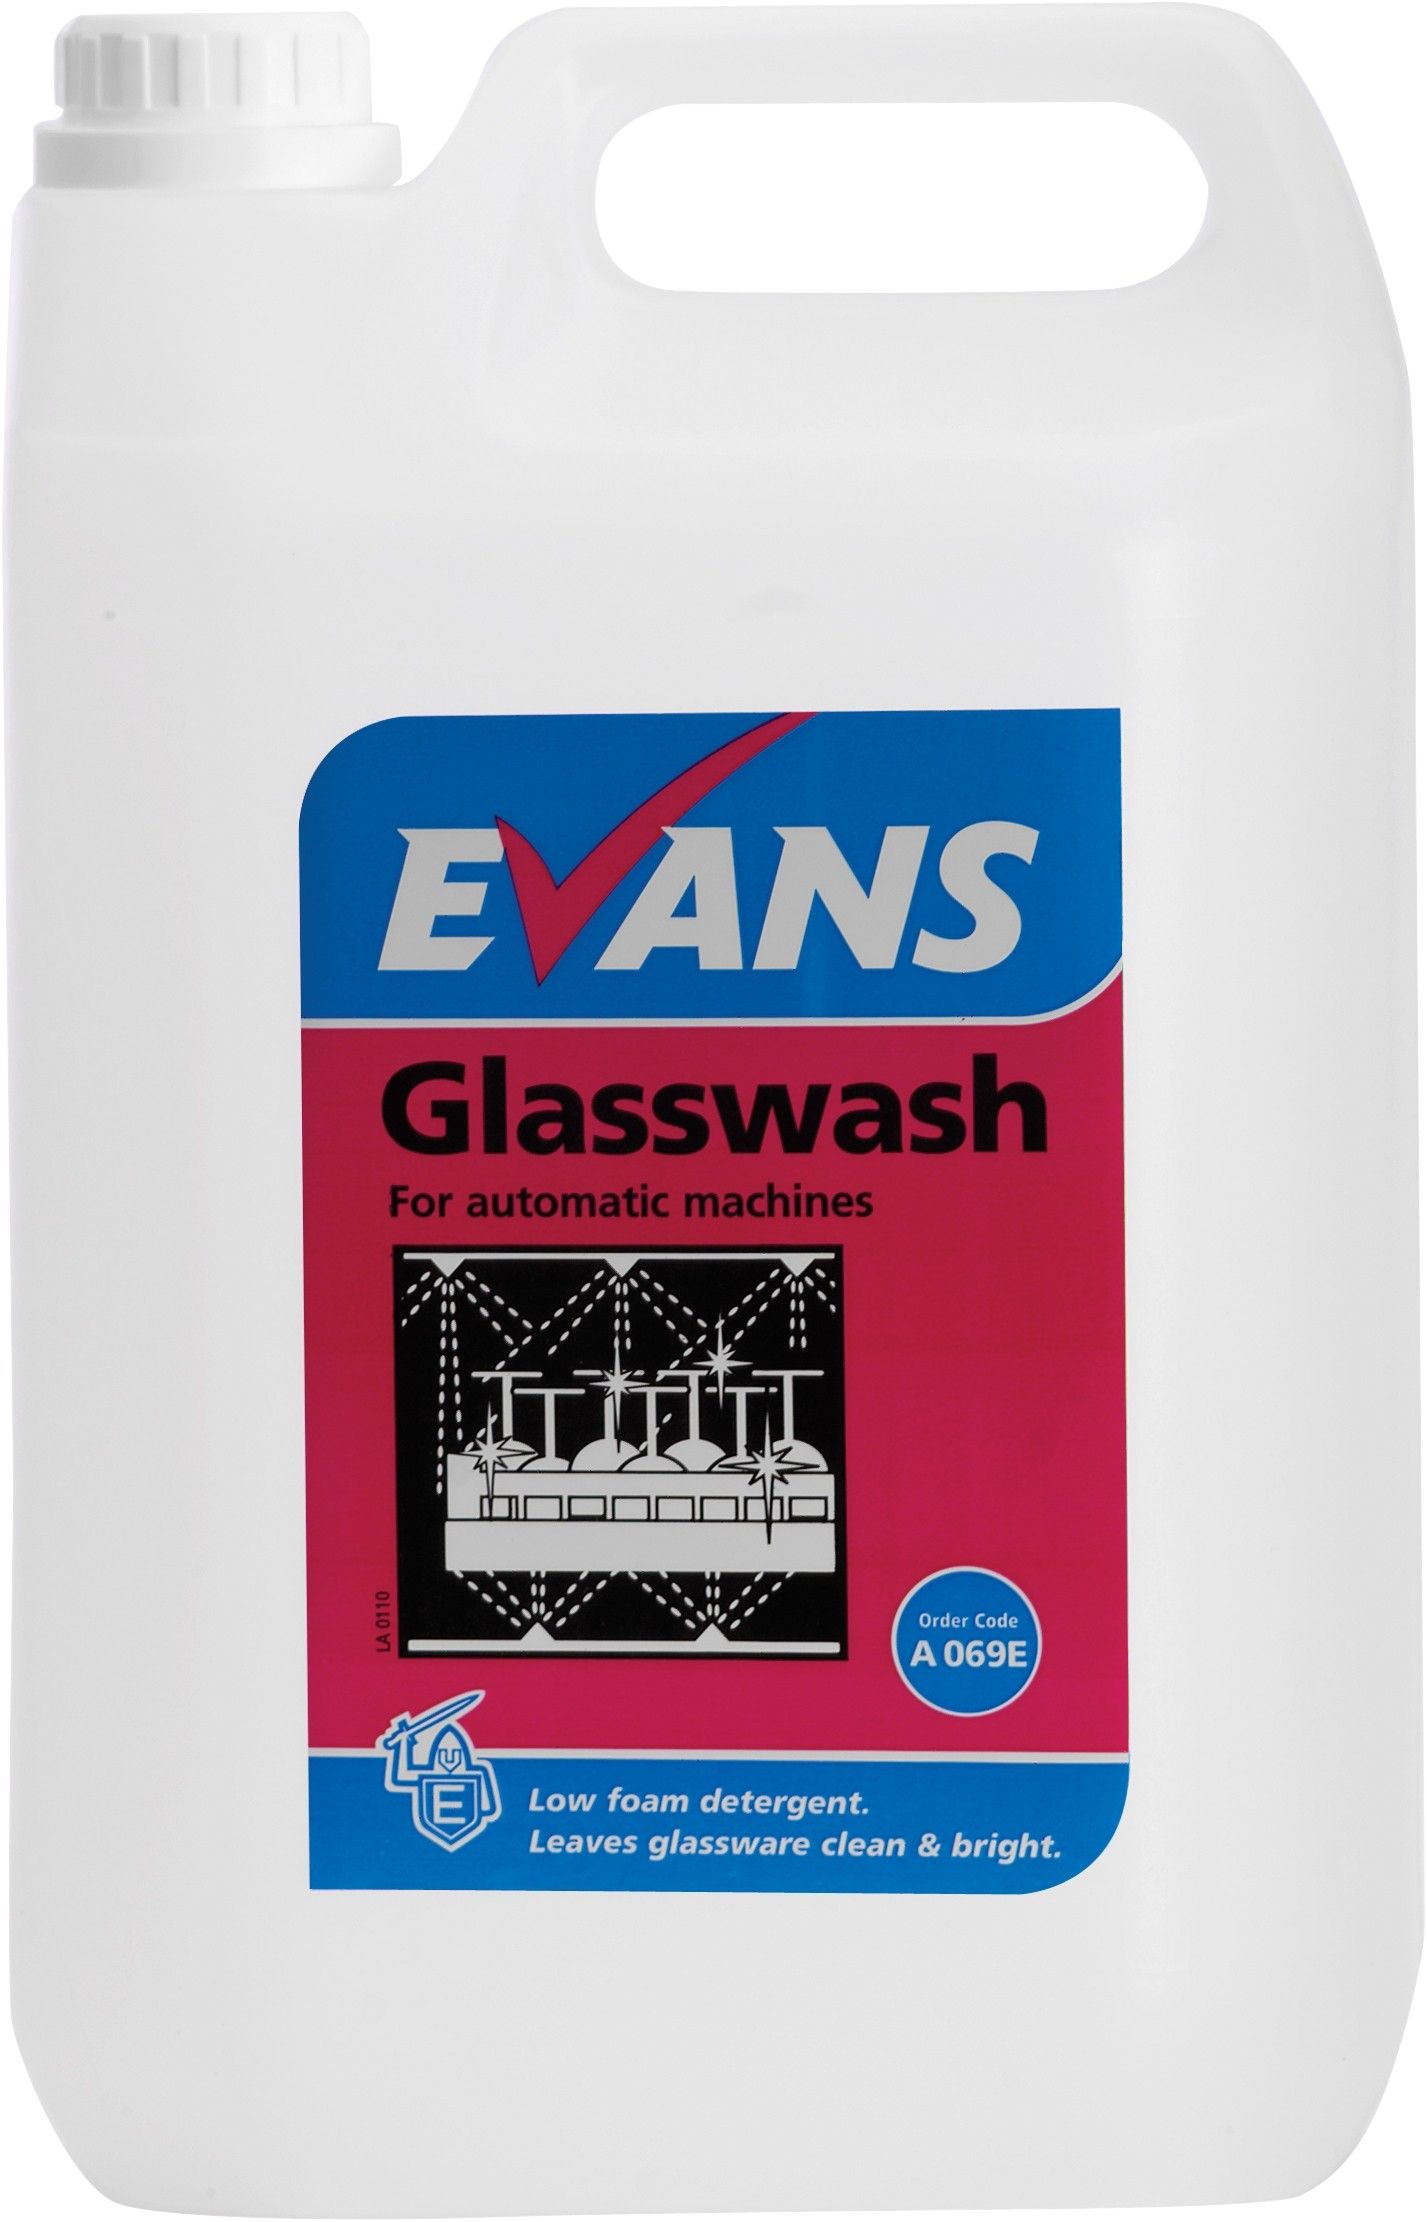 Evans Glasswash - Machine Detergent 5 Ltr